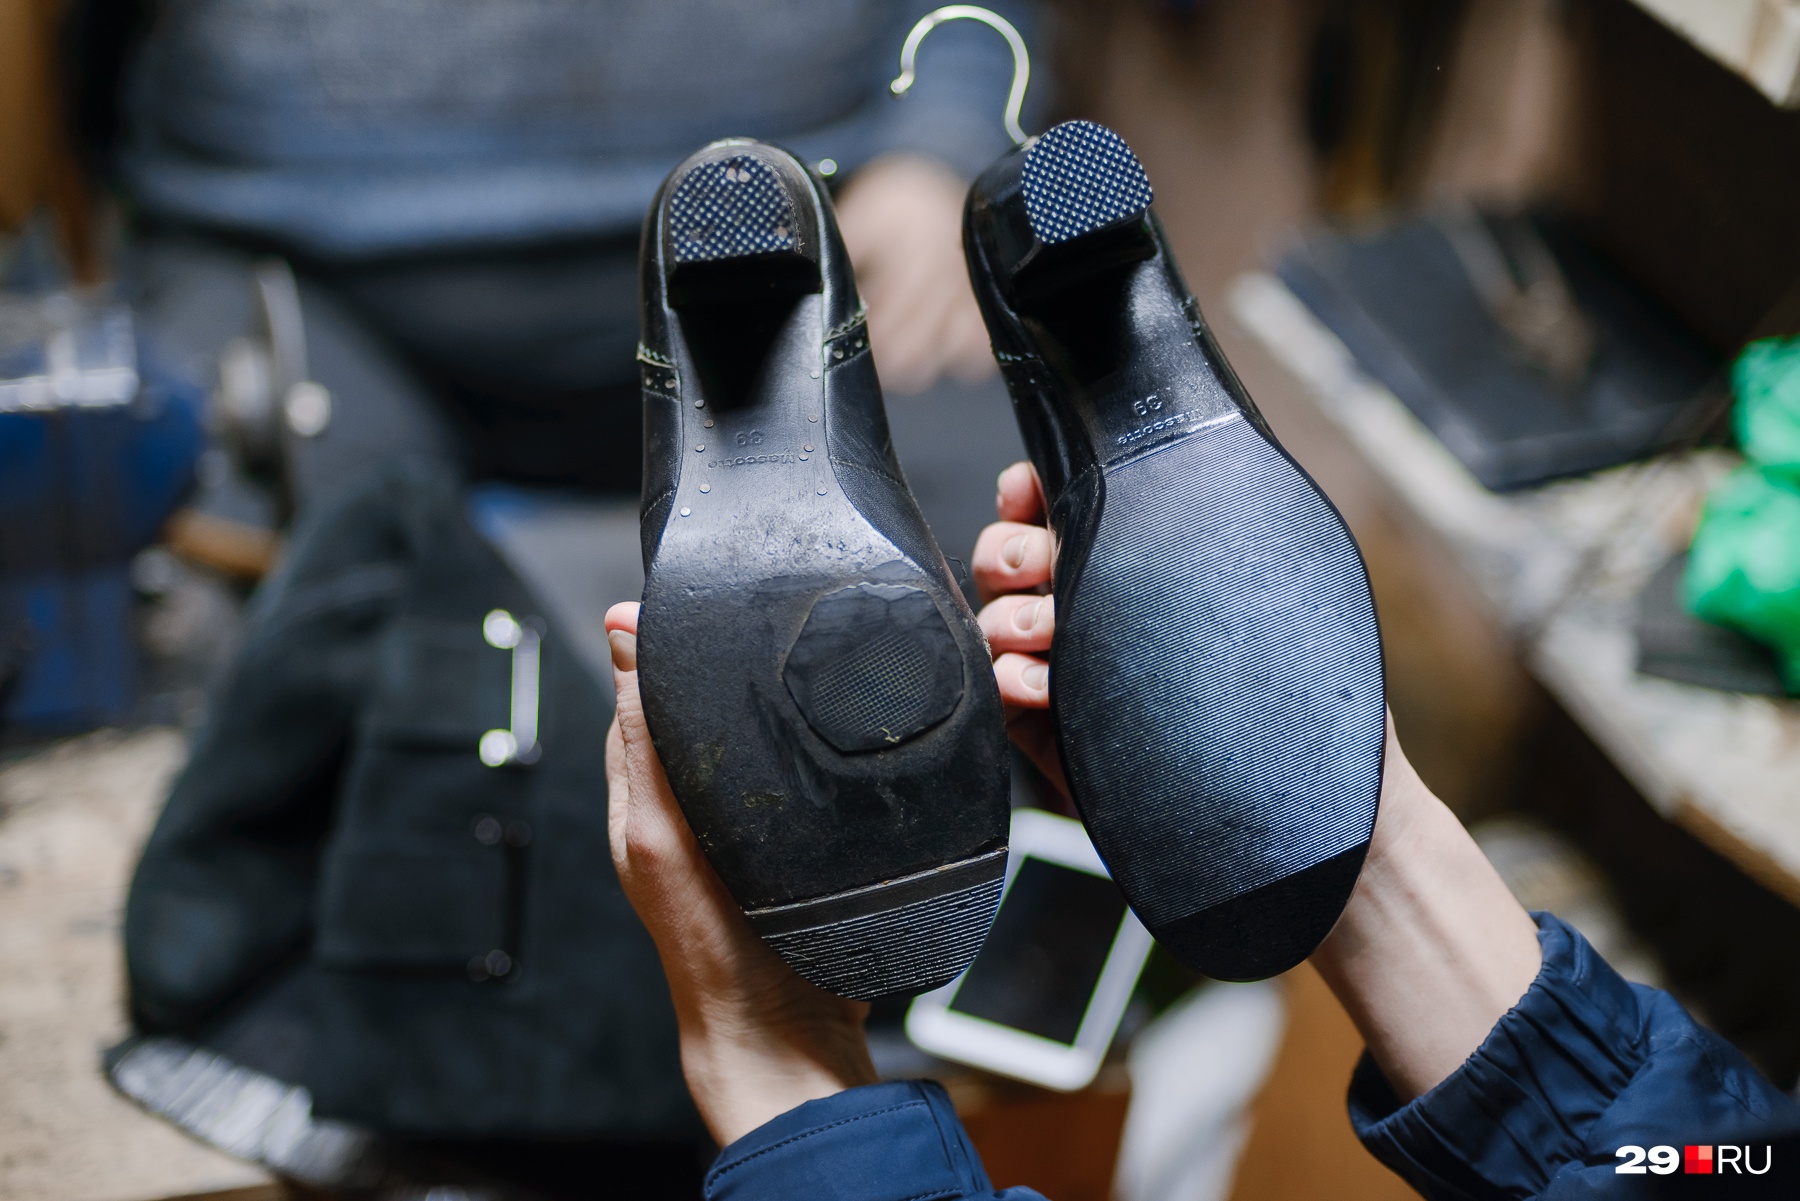 Заниматься ремонтом обуви в домашних условиях — плохая идея